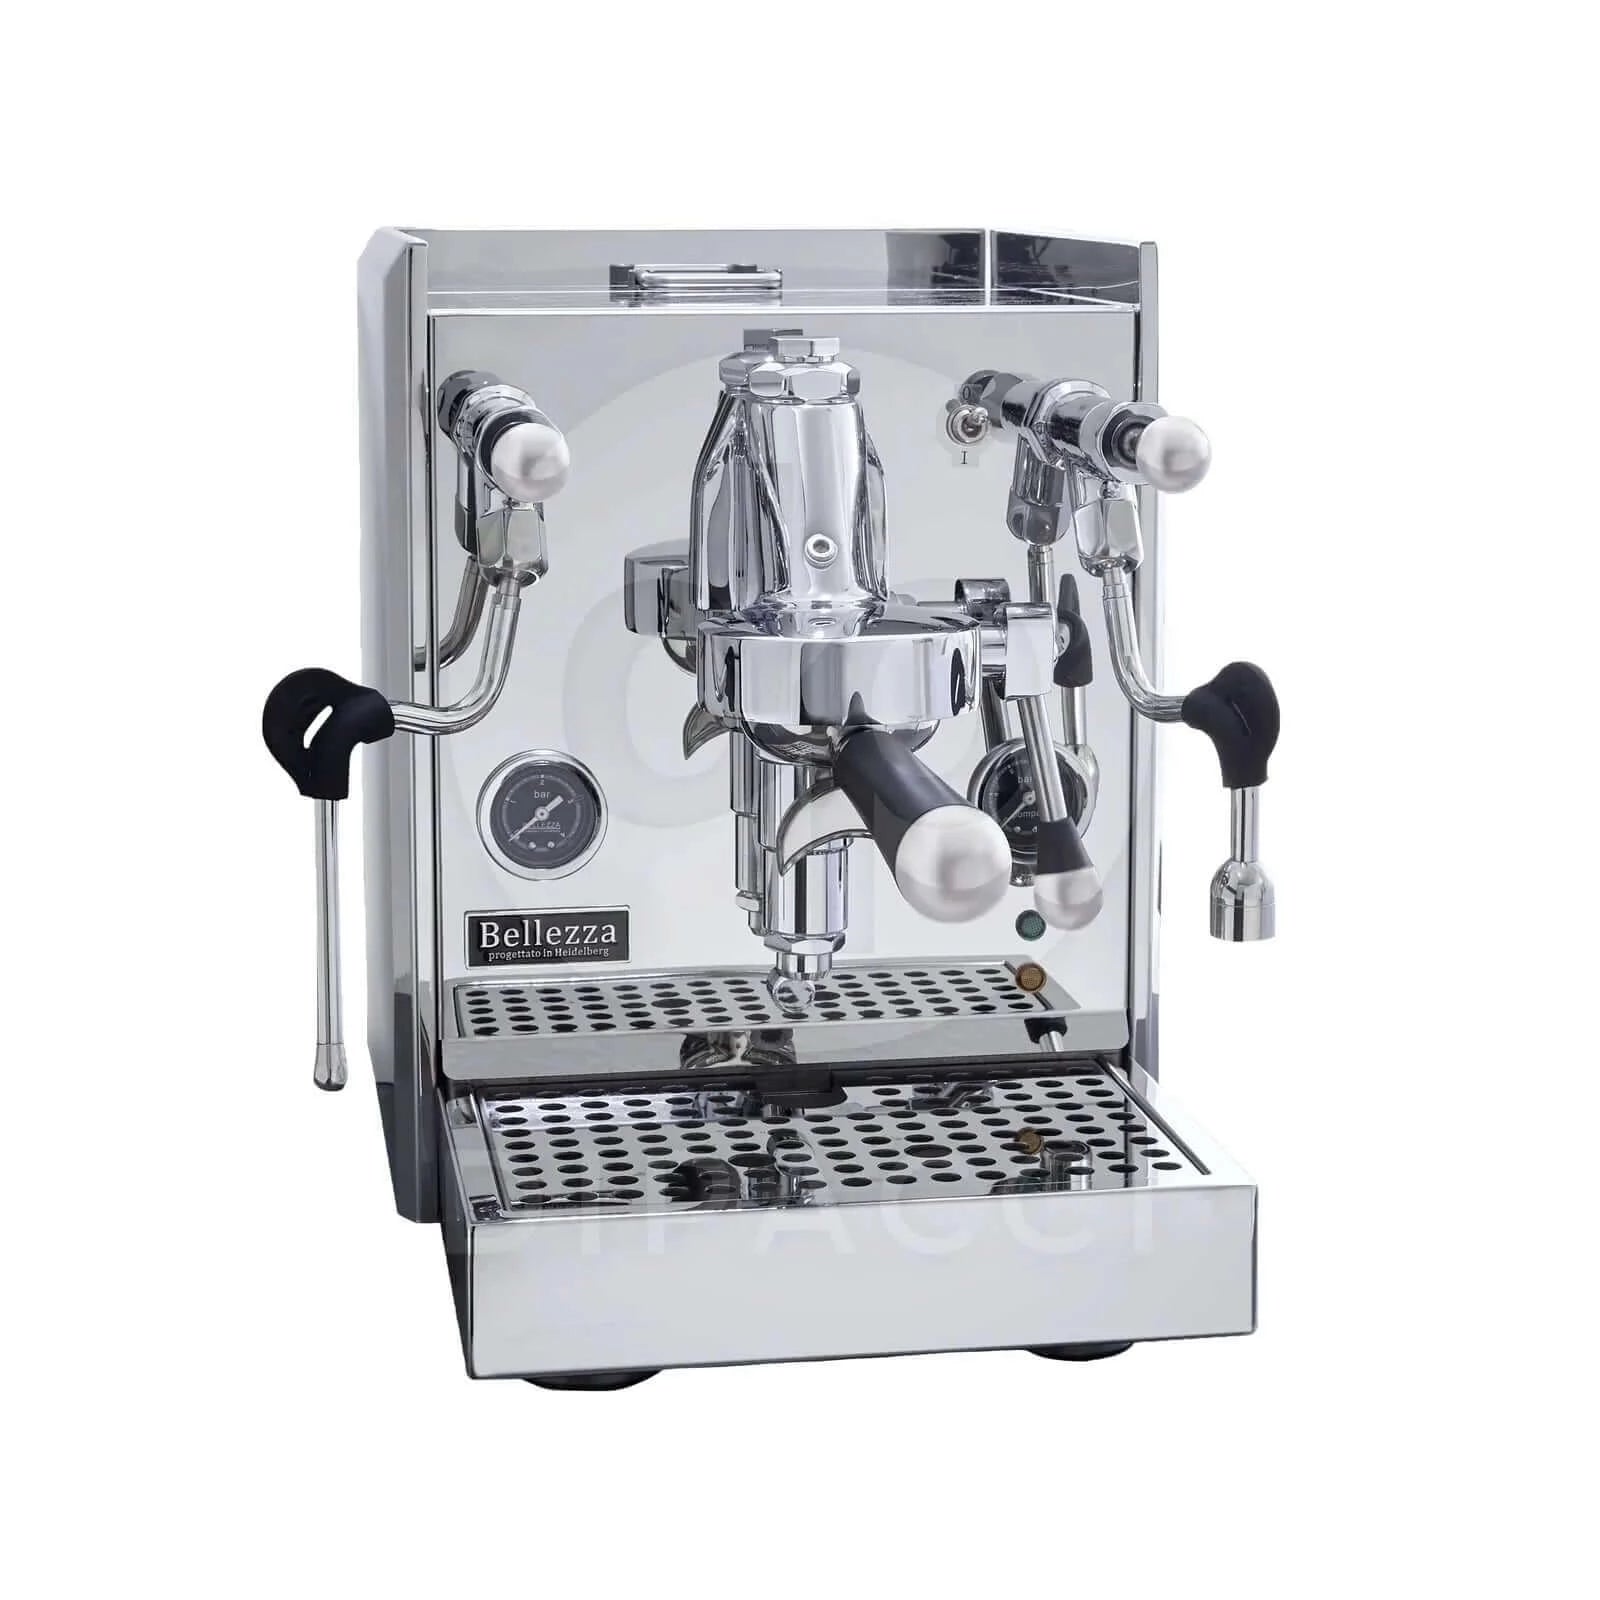  <img src=“ Bellezza Espresso Valentina Coffee Machine.png” alt=“ Bellezza Espresso Valentina Coffee Machine”>